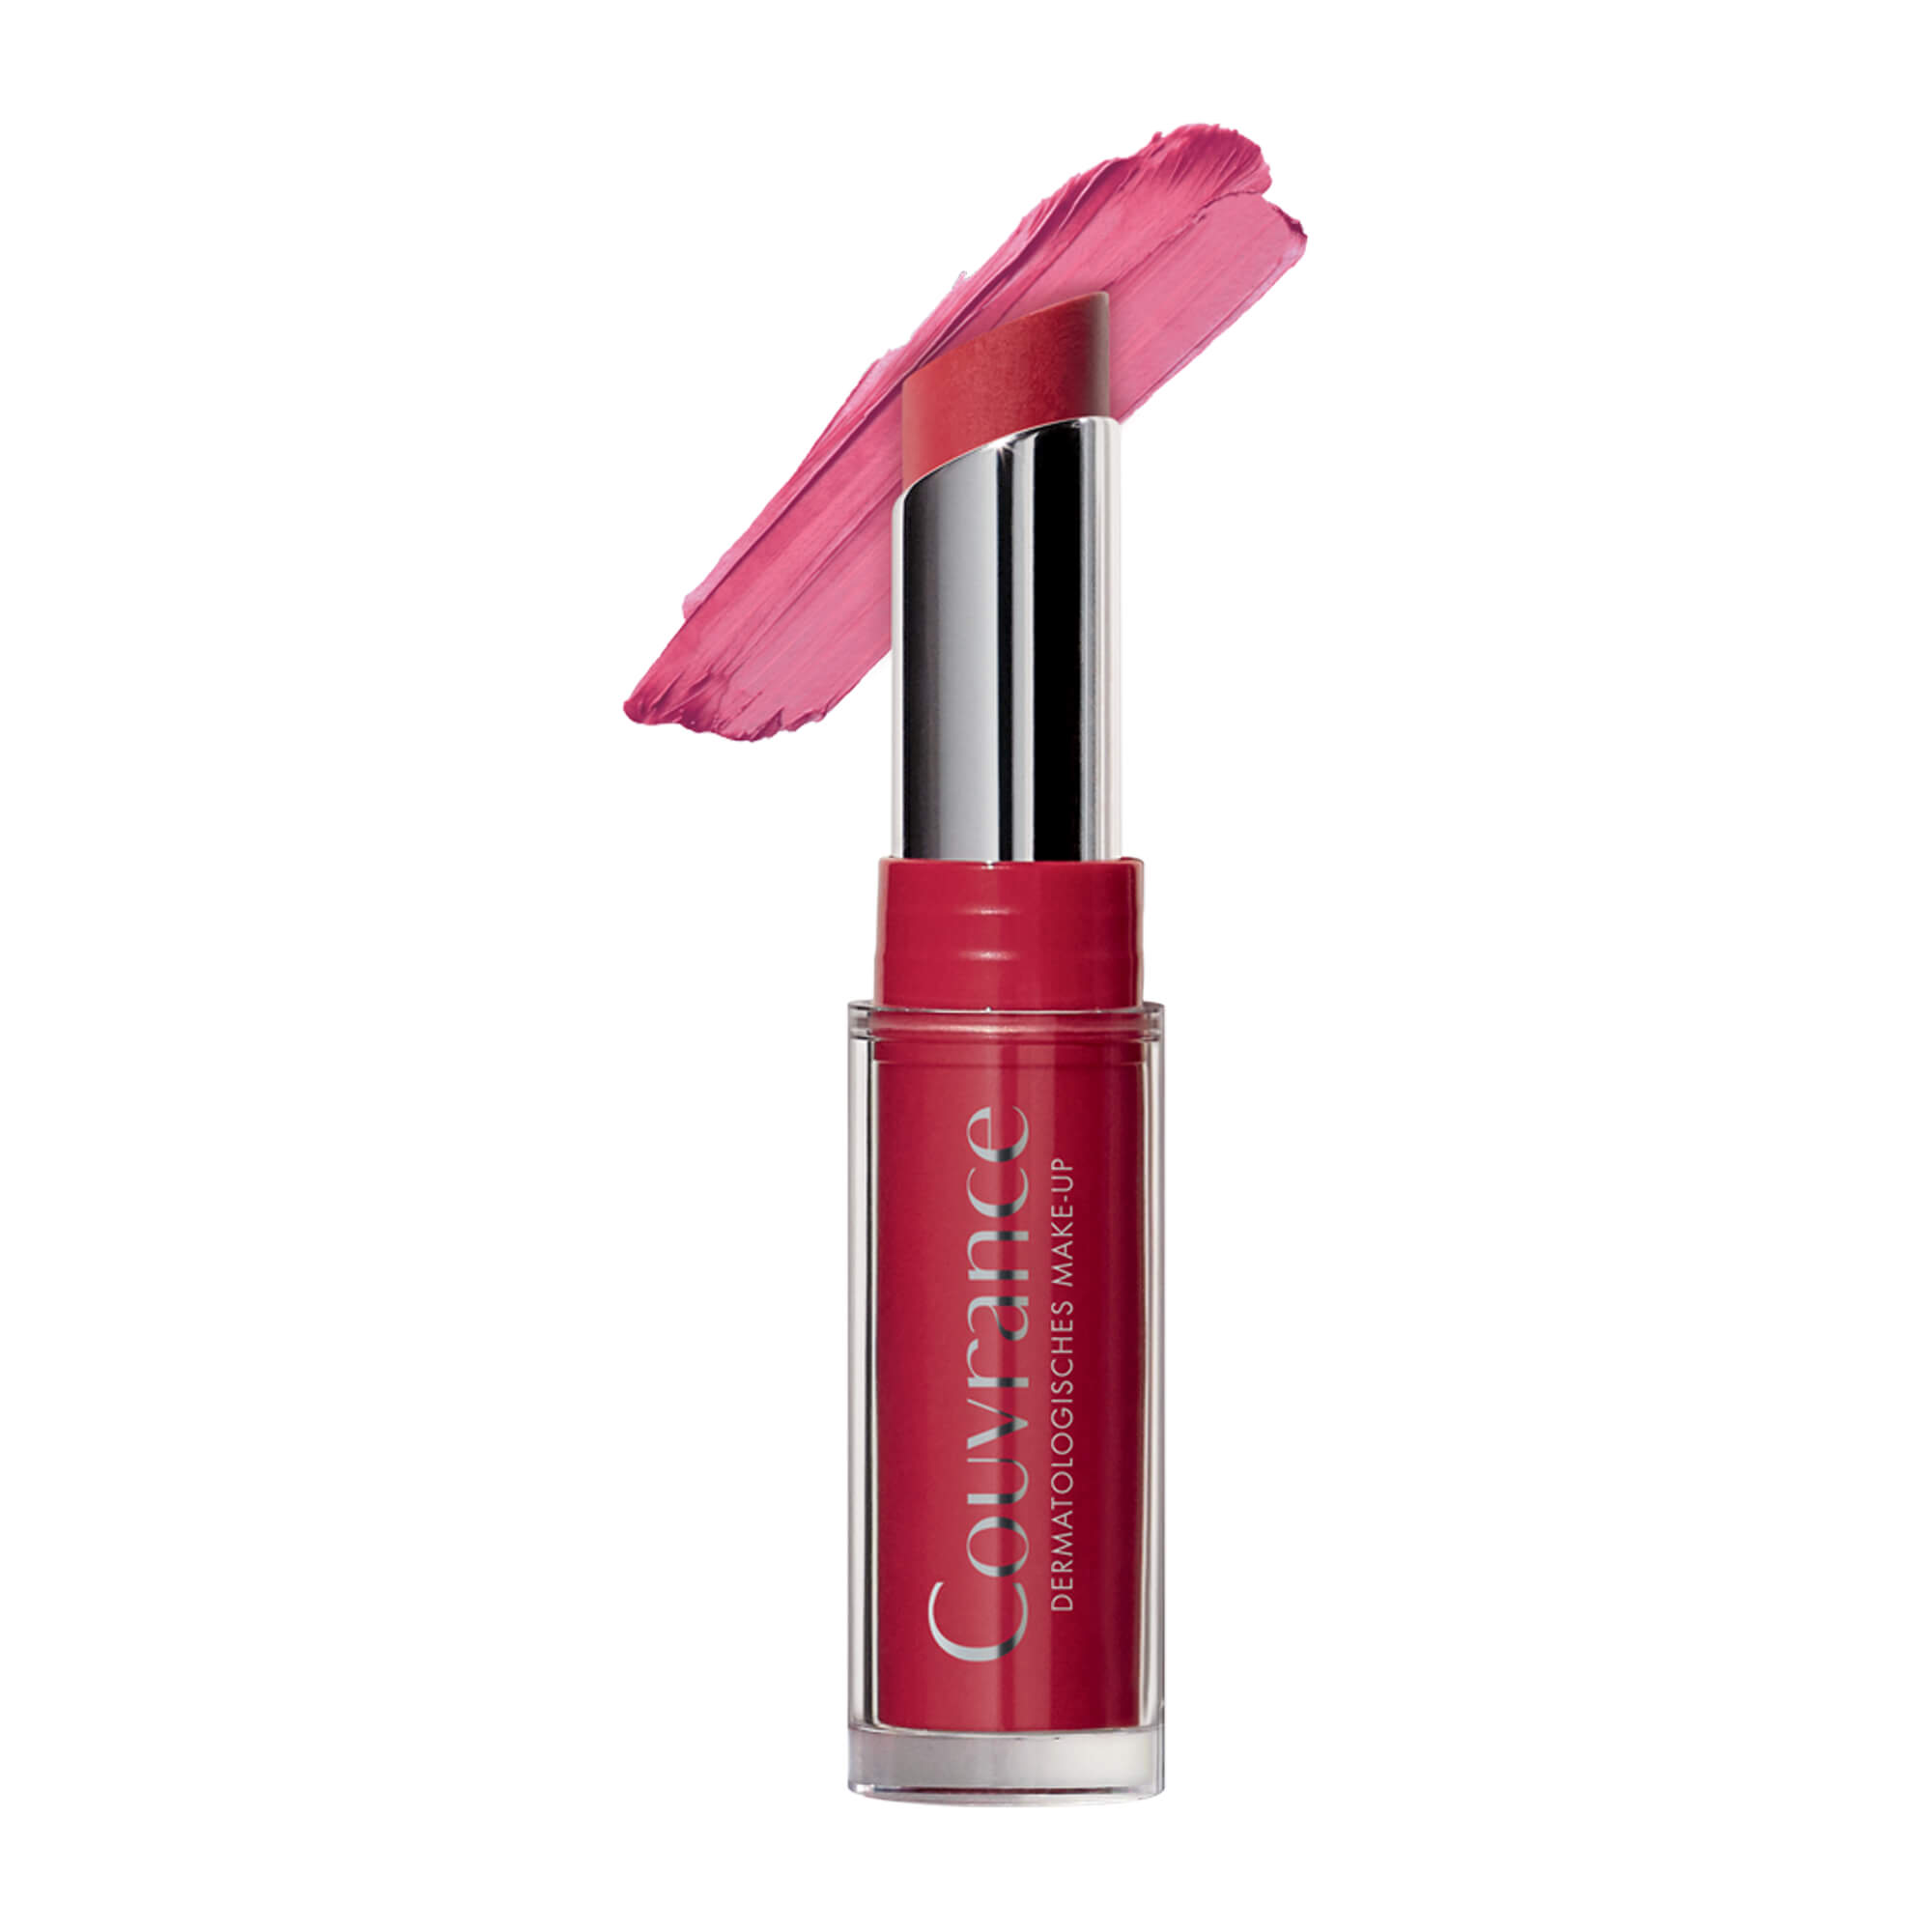 Getönte Lippenpflege in der Farbe Pink.